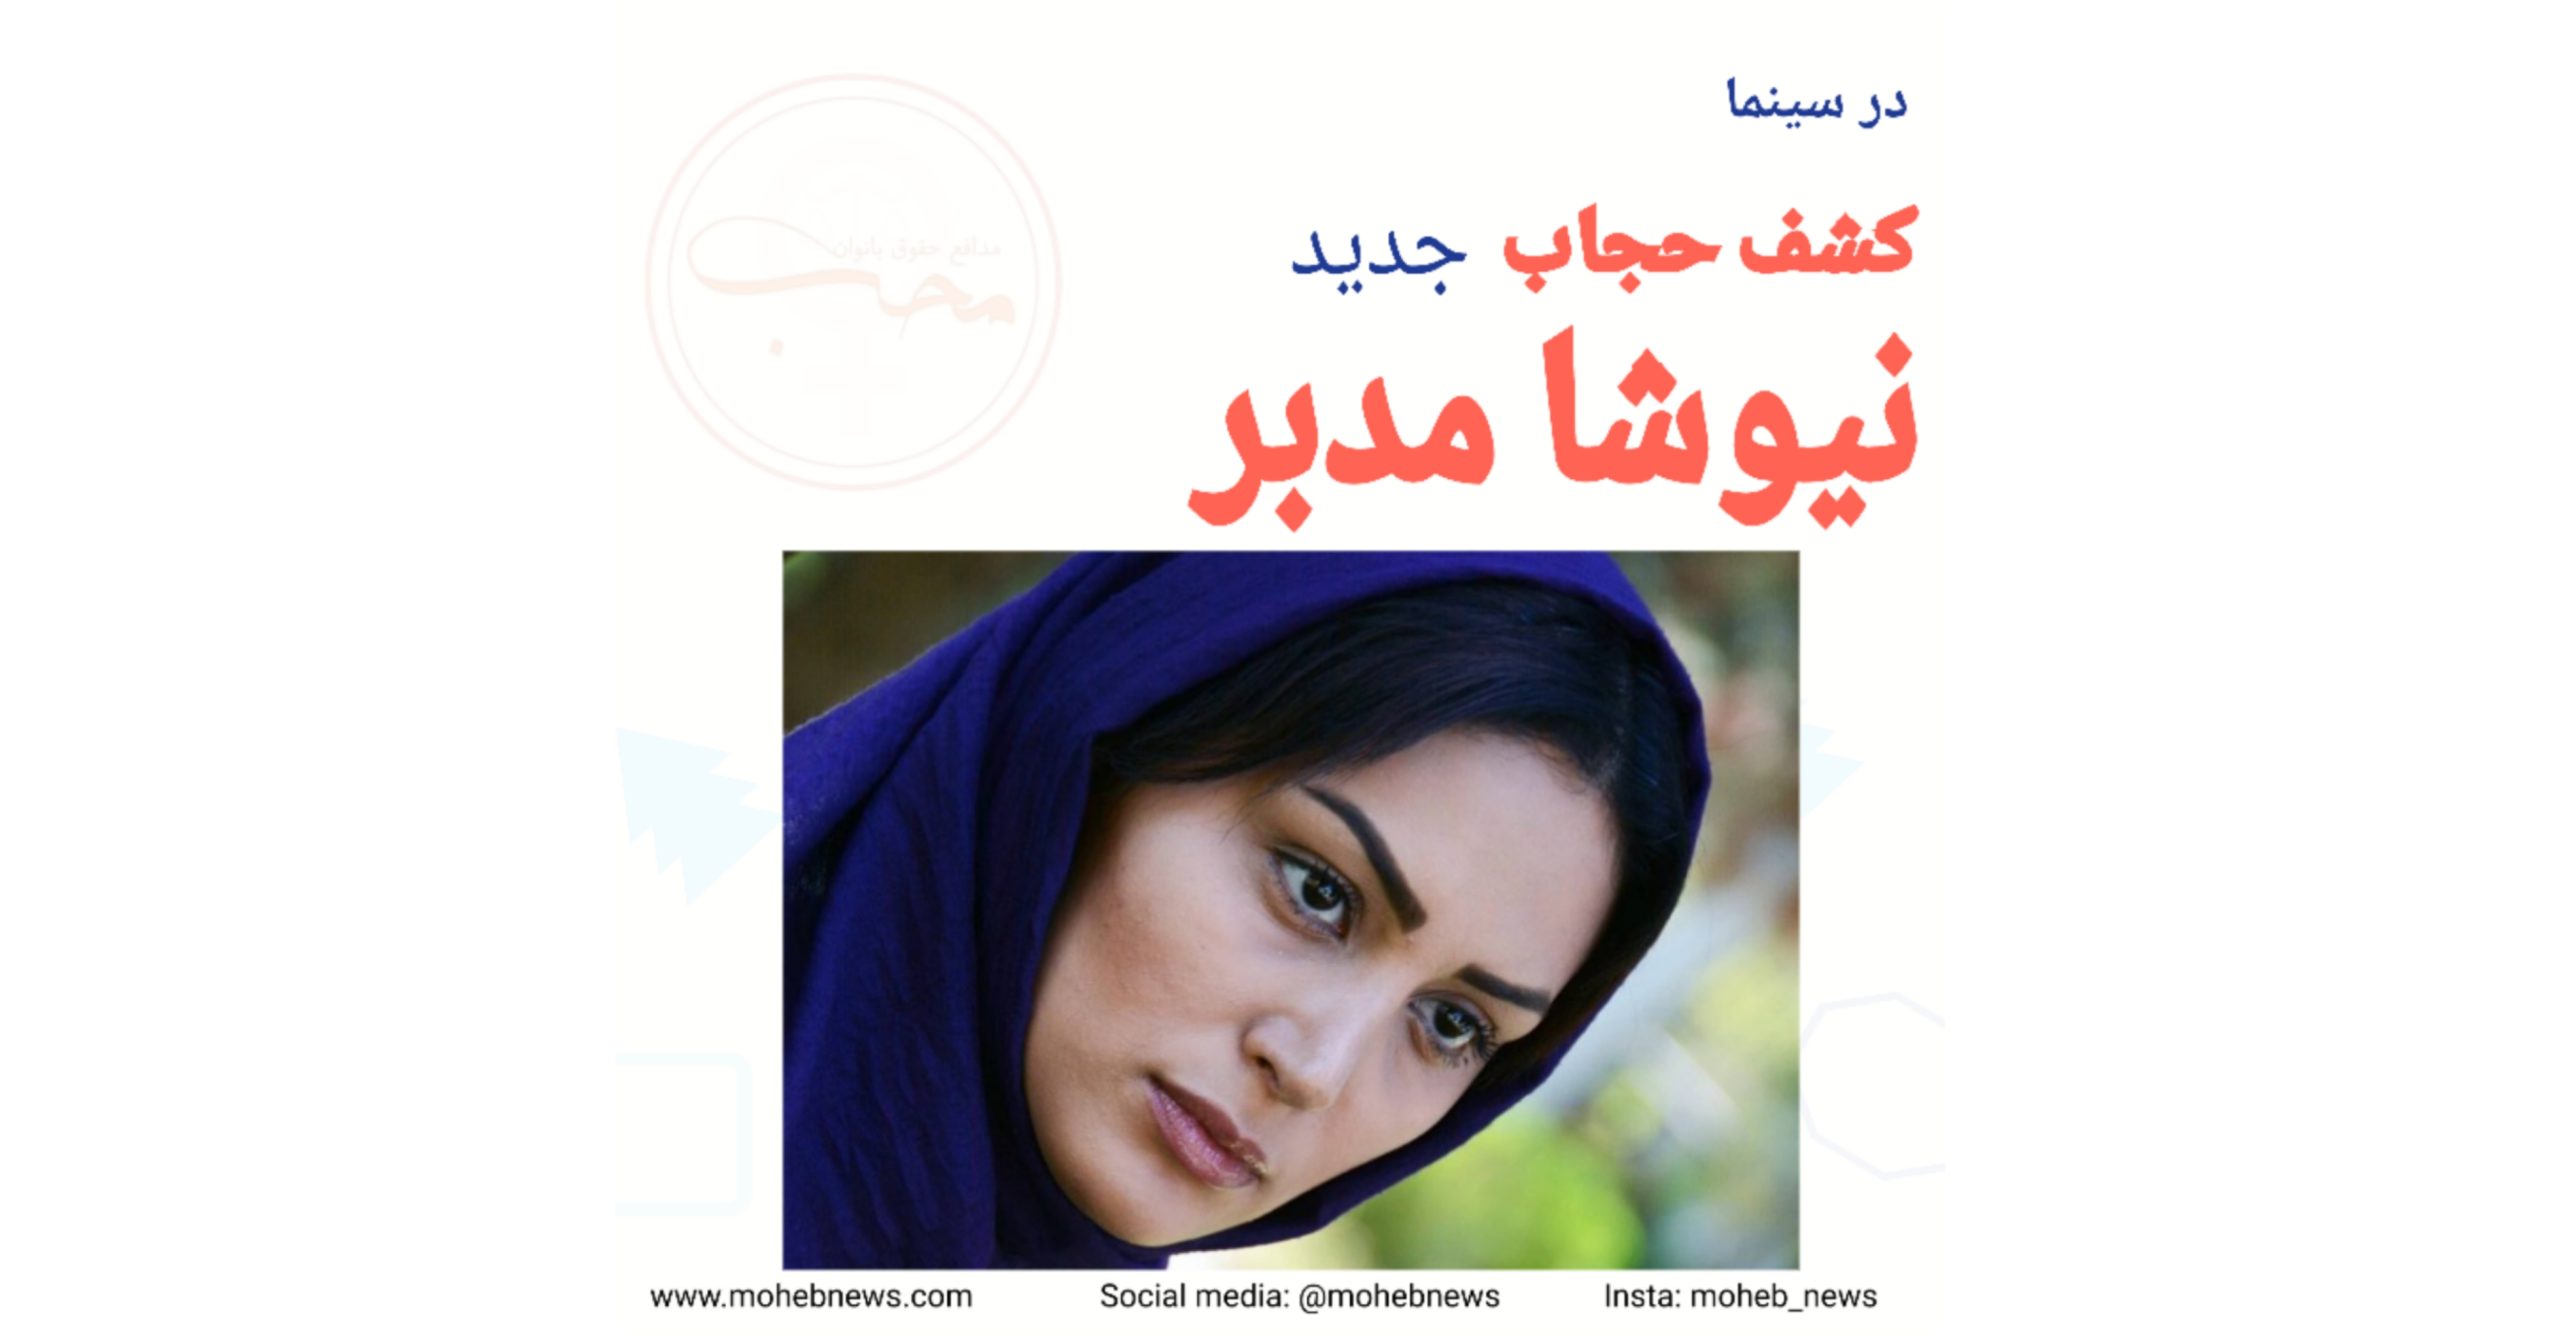 کشف حجاب نیوشا مدبر، بازیگر زن ایرانی | محب نیوز